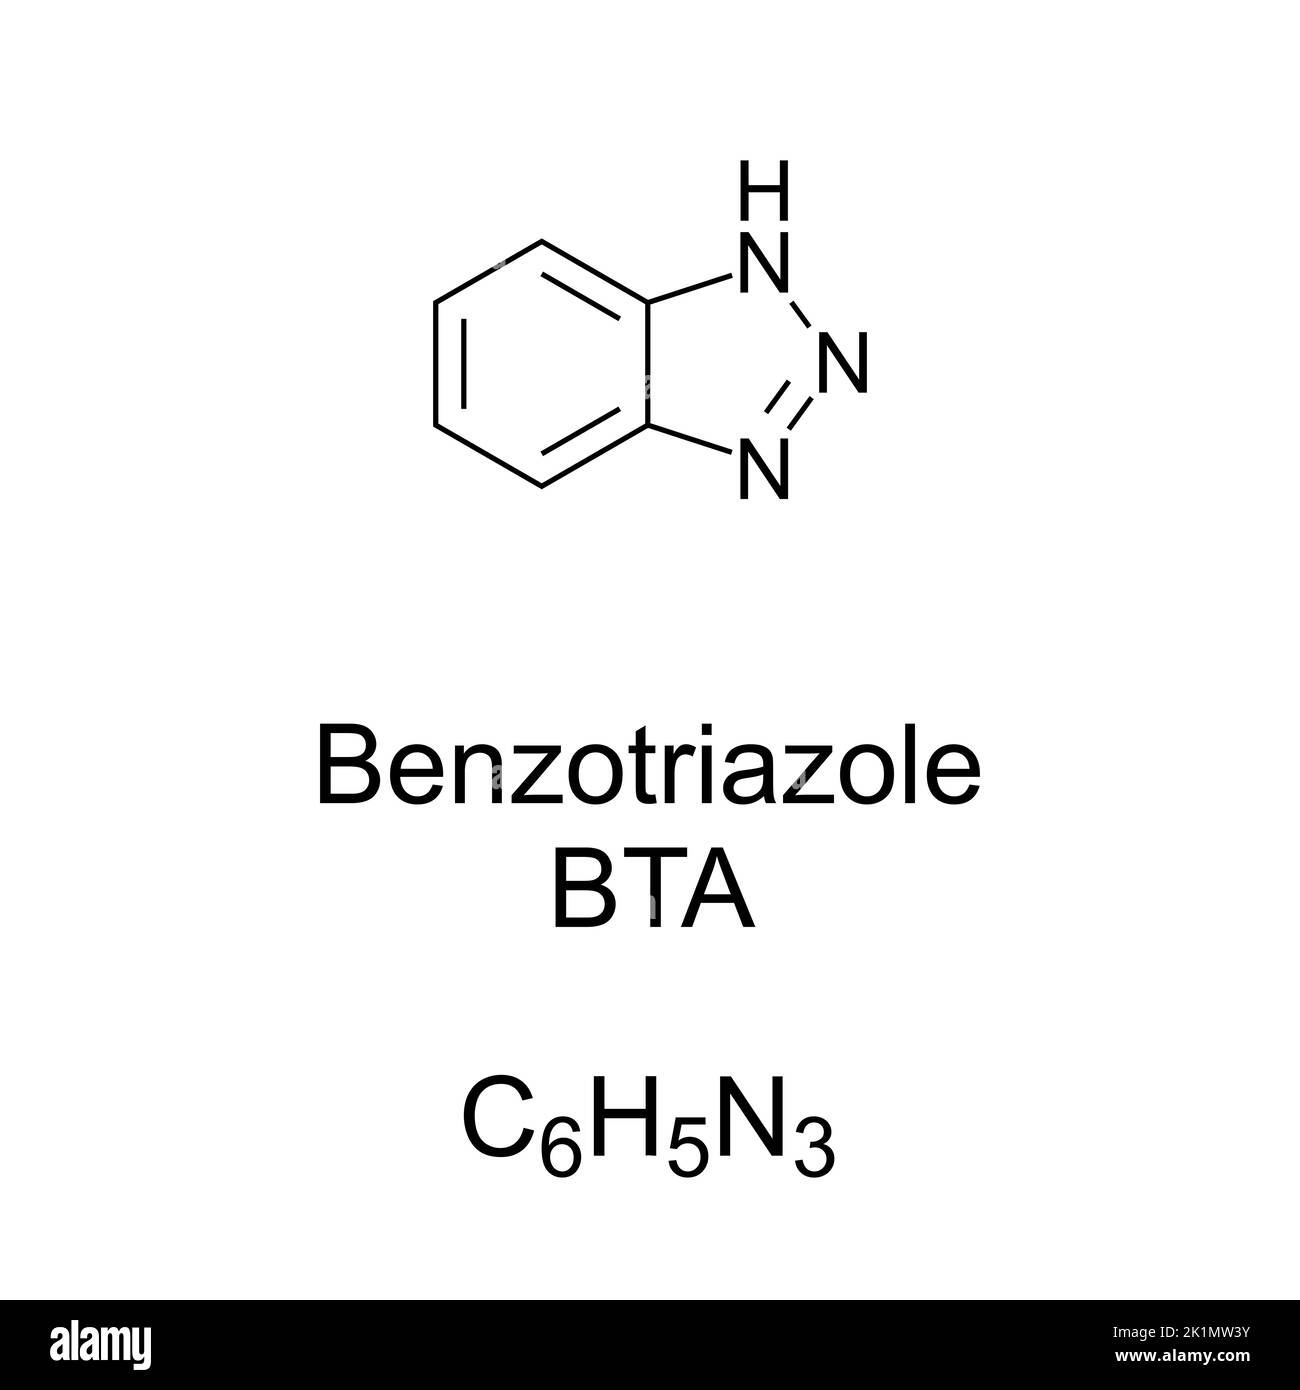 Benzotriazol, fórmula química y estructura BTA. Eficaz inhibidor de la corrosión para el cobre y sus aleaciones al evitar reacciones superficiales indeseables Foto de stock